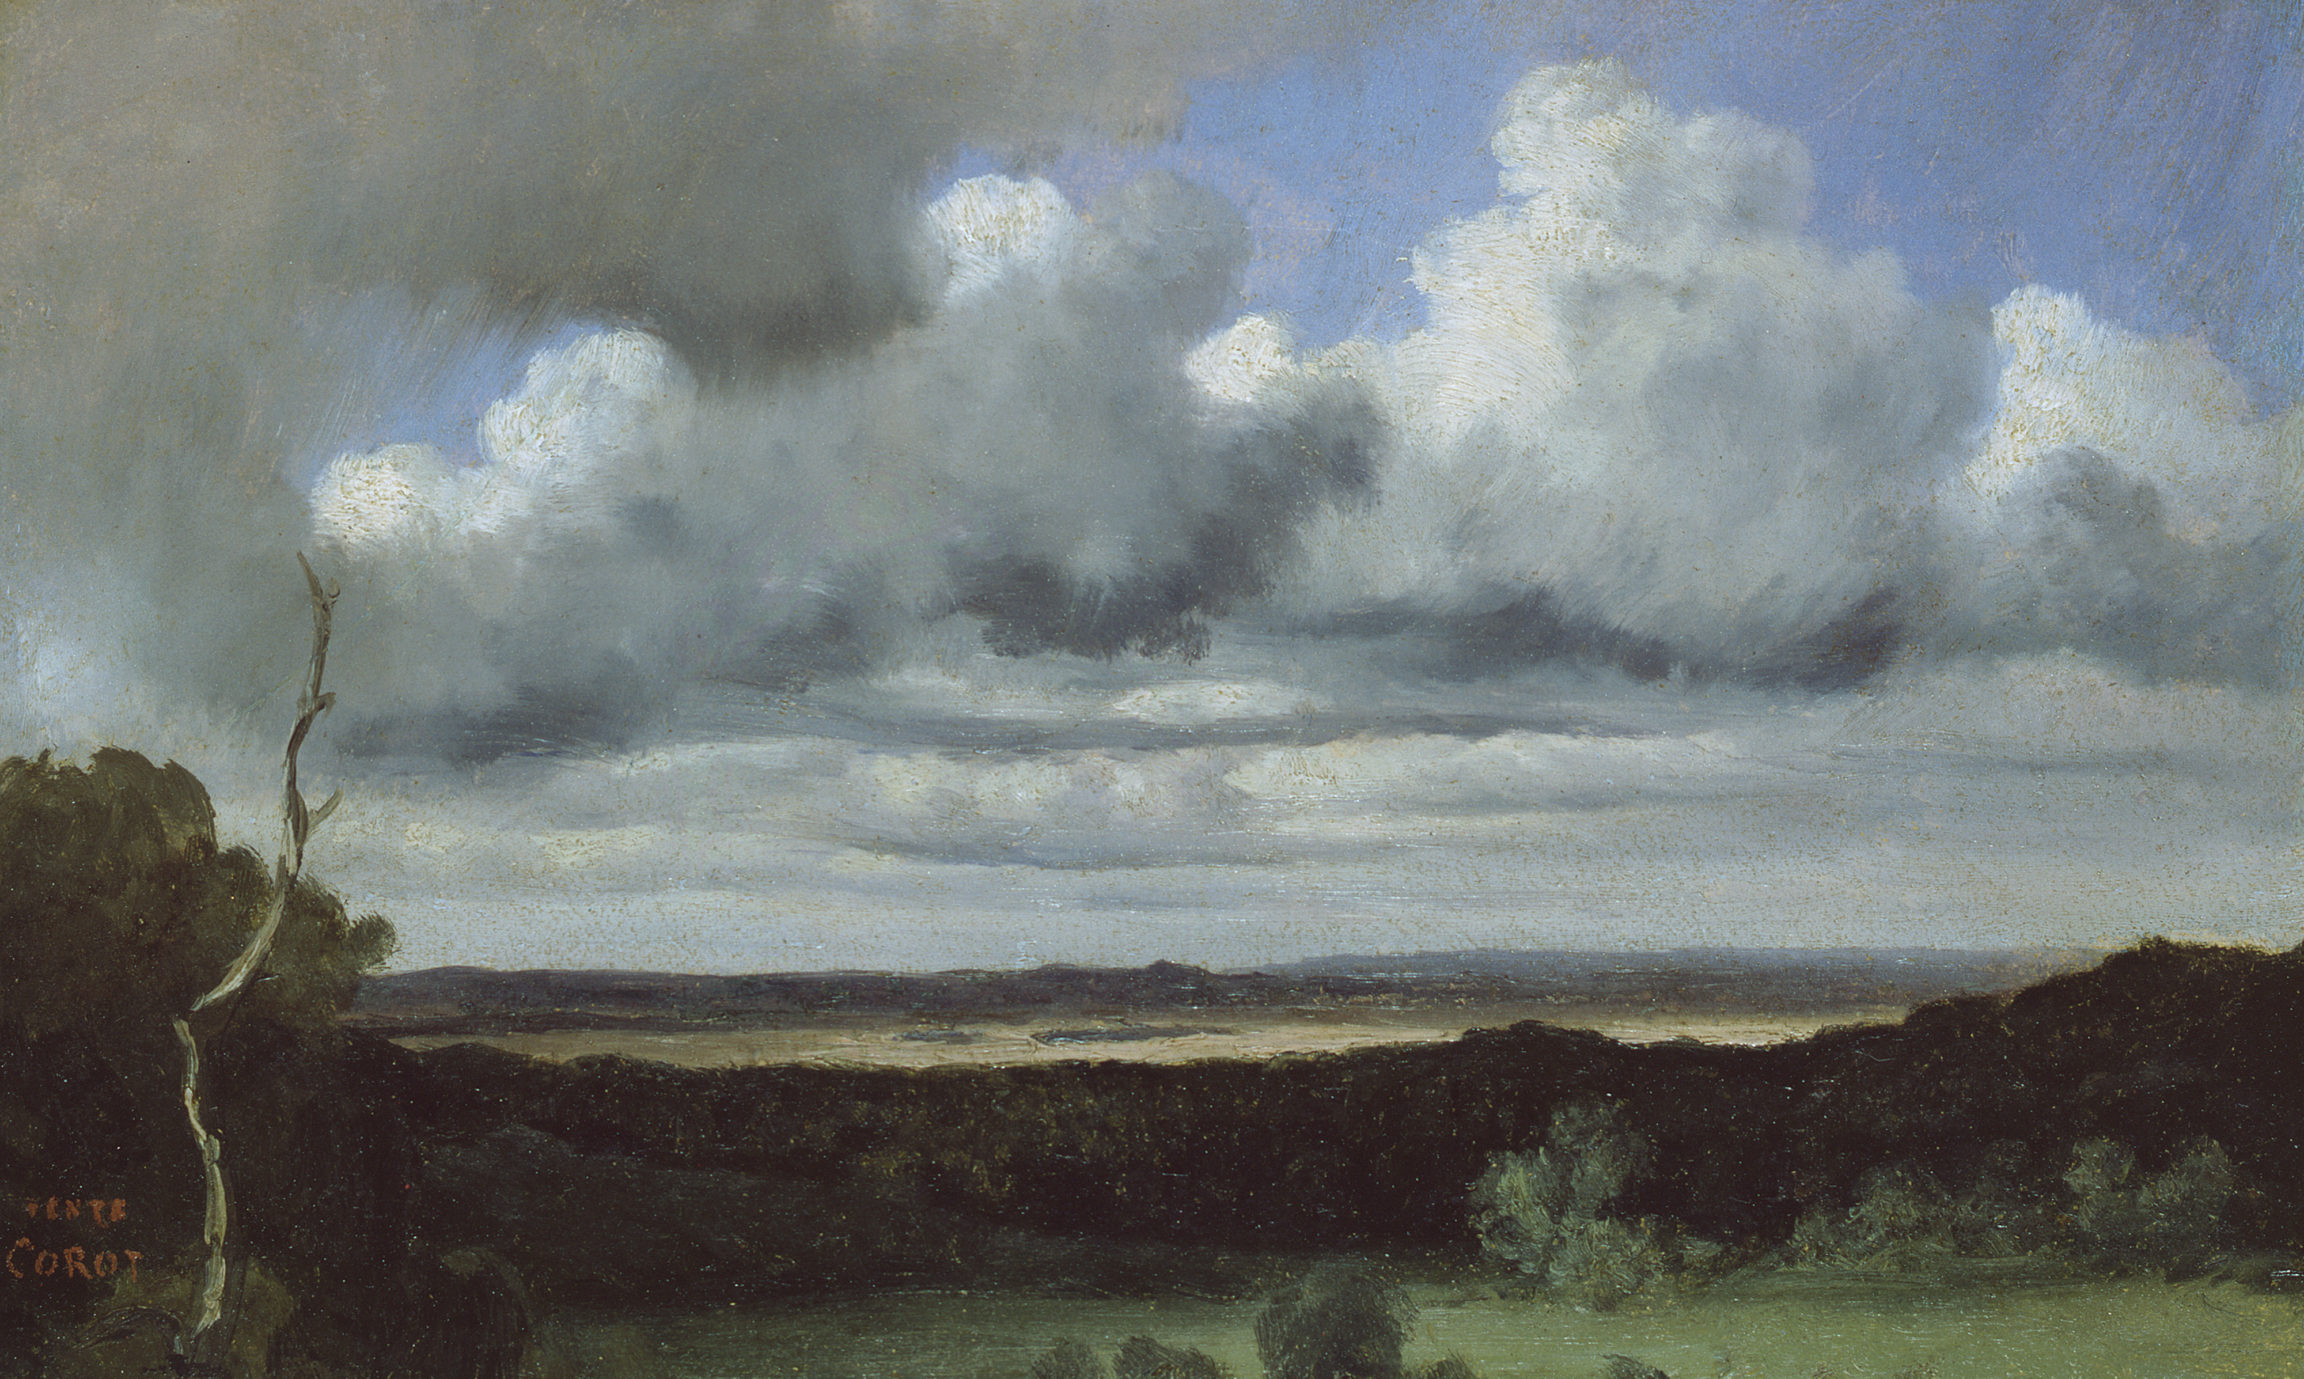 Jean-Baptiste Camille Corot, Fontainebleau – Orage sur les plaines, 1822